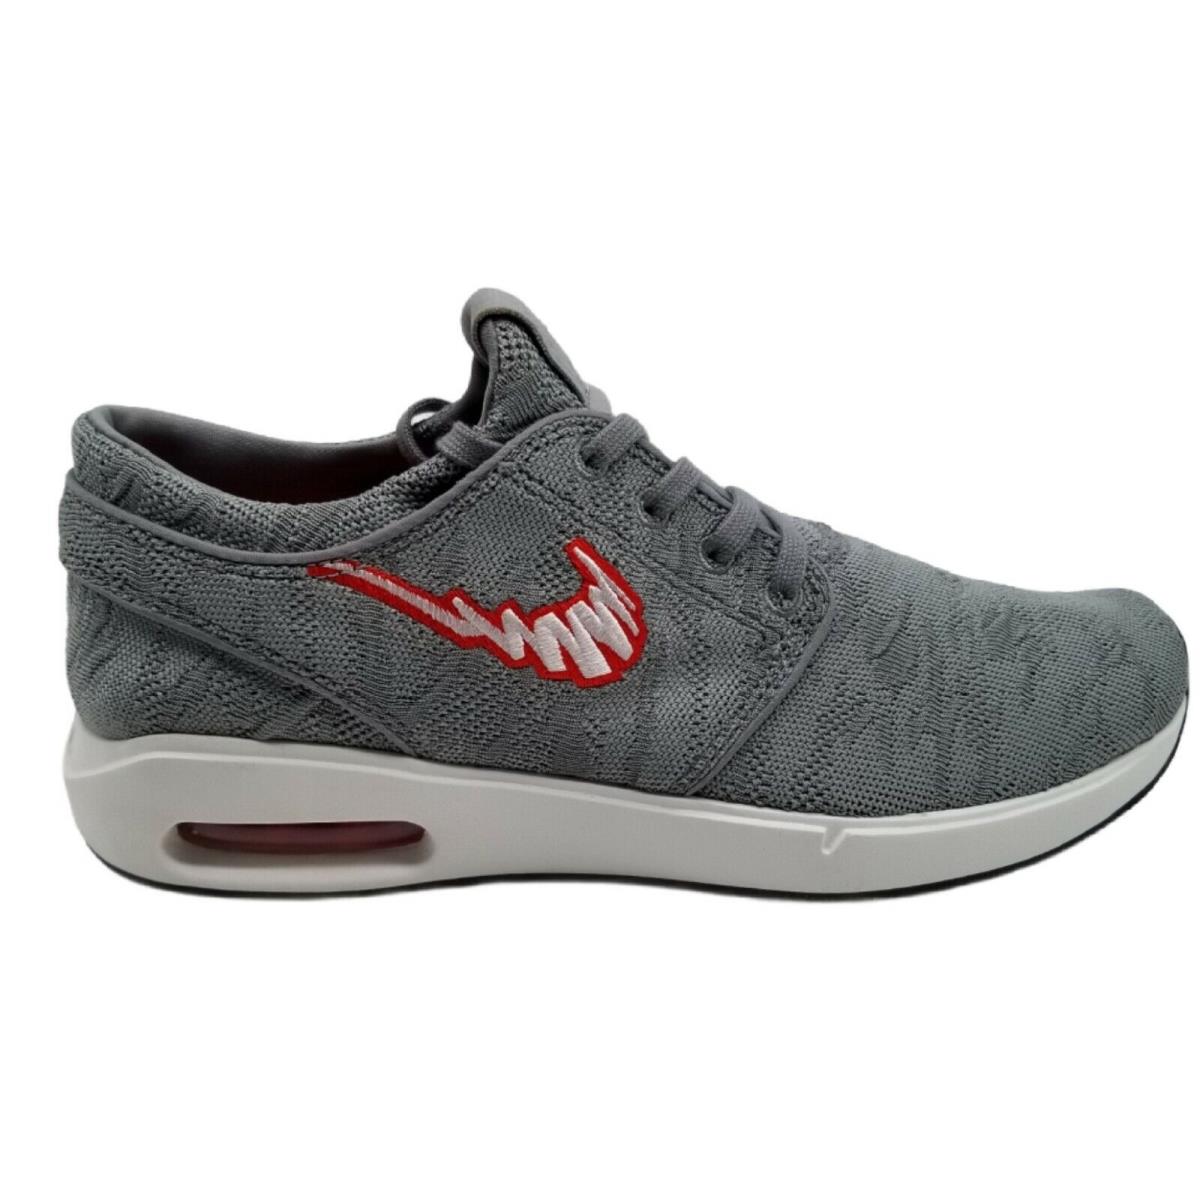 Nike Mens SB Air Max Janoski 2 Particle Gray Skate Shoes Size 8.5